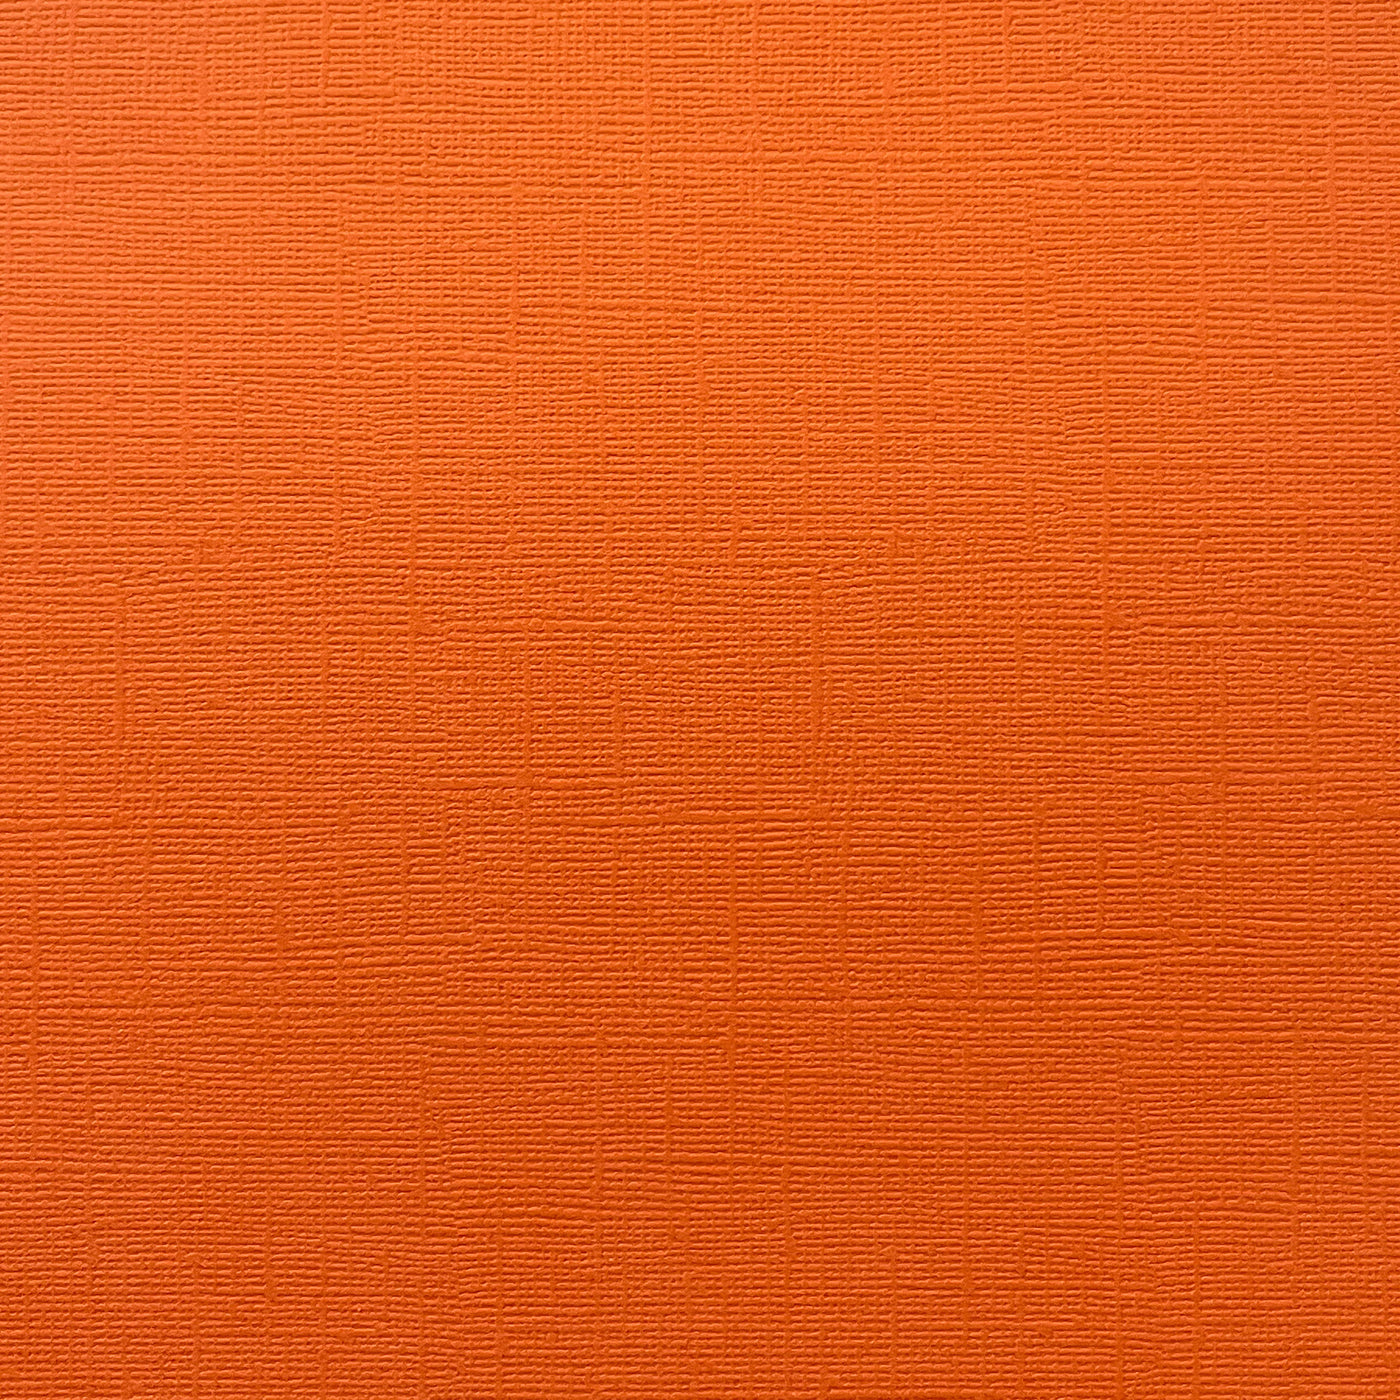 GOLDFISH - Textured Orange 12x12 Cardstock - Encore Paper